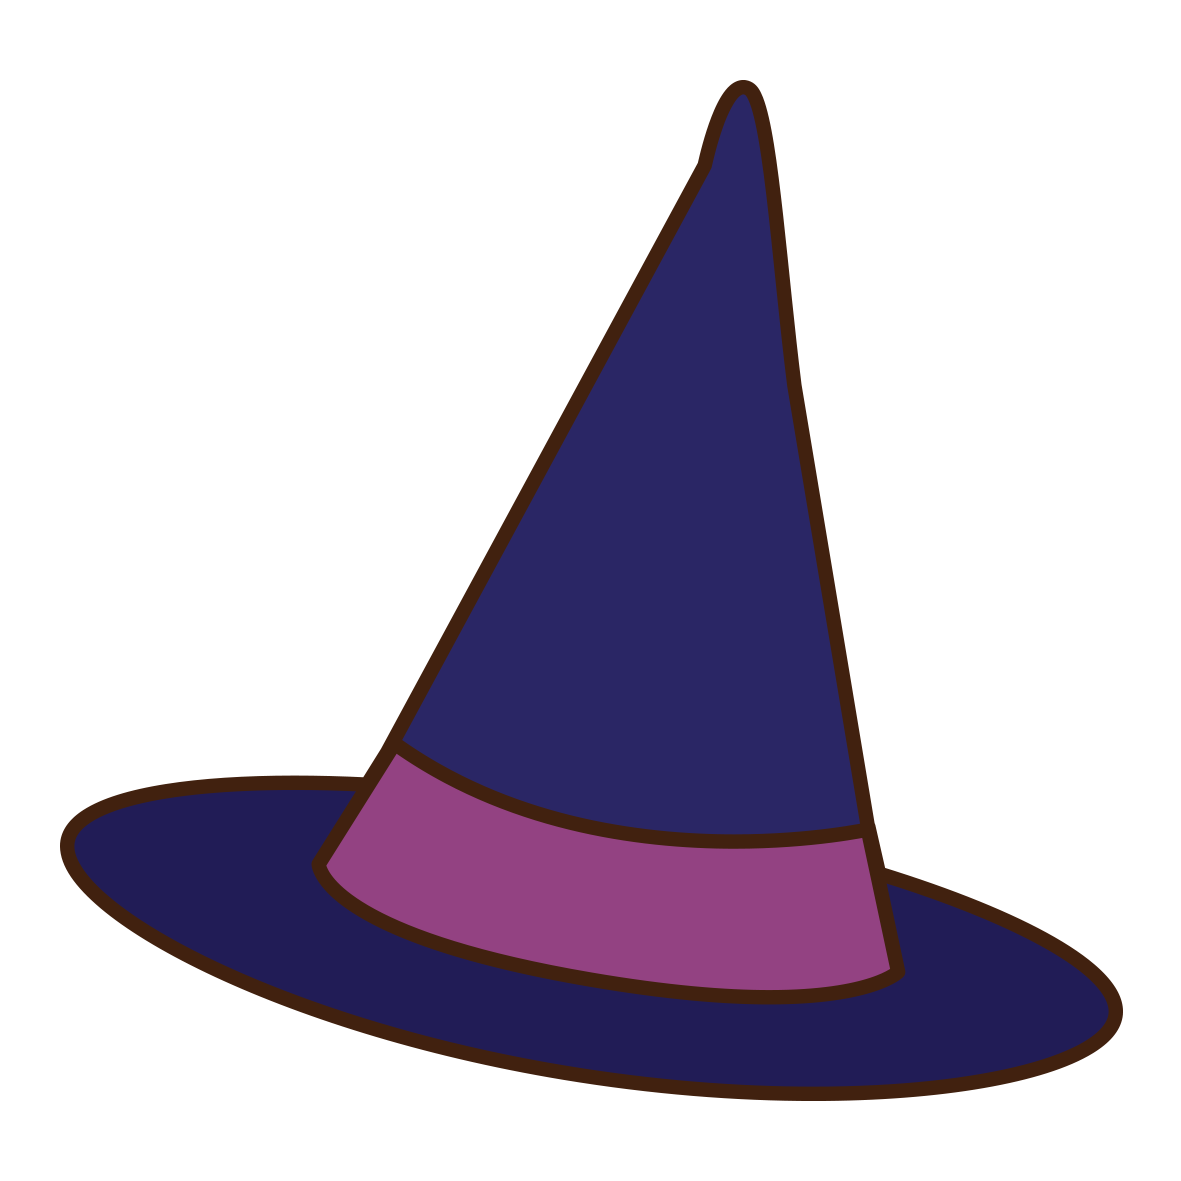 魔女の帽子